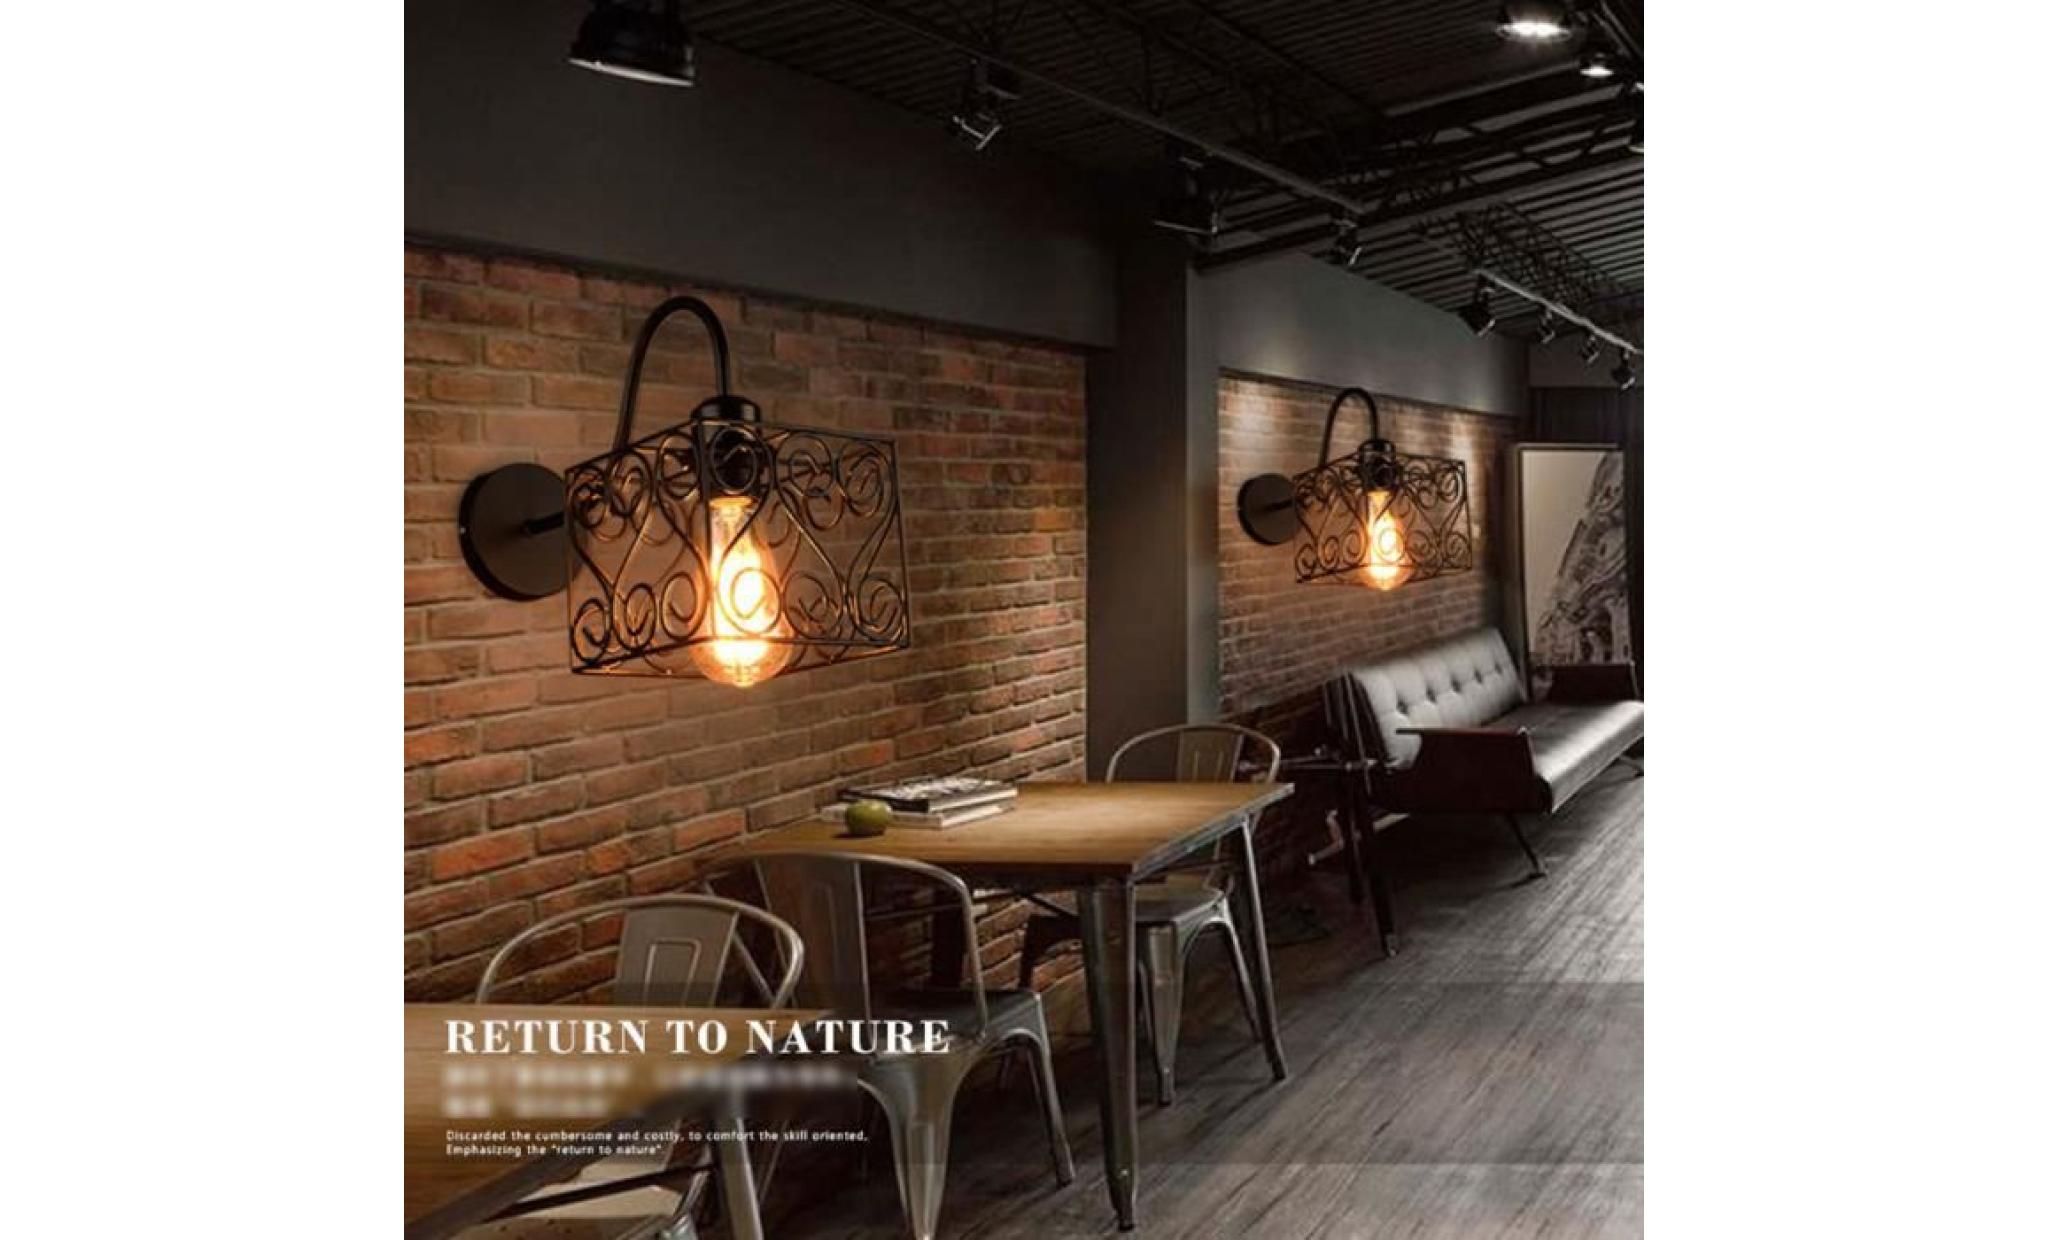 rétro vintage applique loft lampe murale réglable mur de feu edison cage de fer e27 industriel décor couloir bar café hôtel